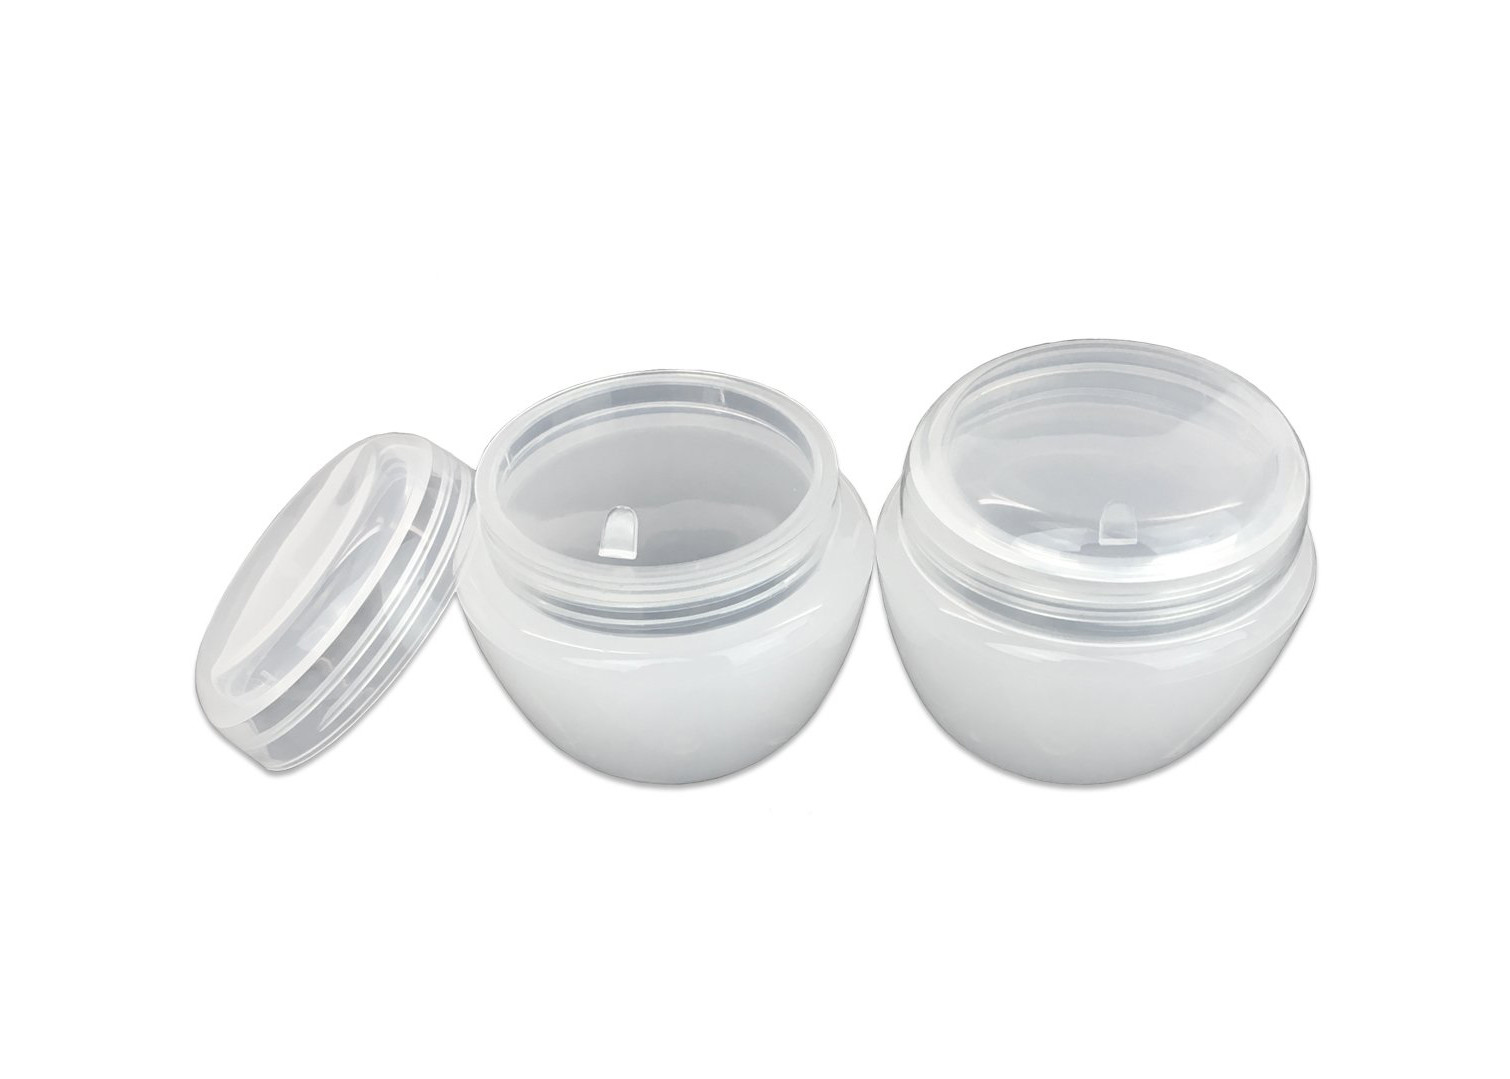 Tarro poner crema privado de aire de los envases vacíos blancos compactos del maquillaje resistente a la corrosión